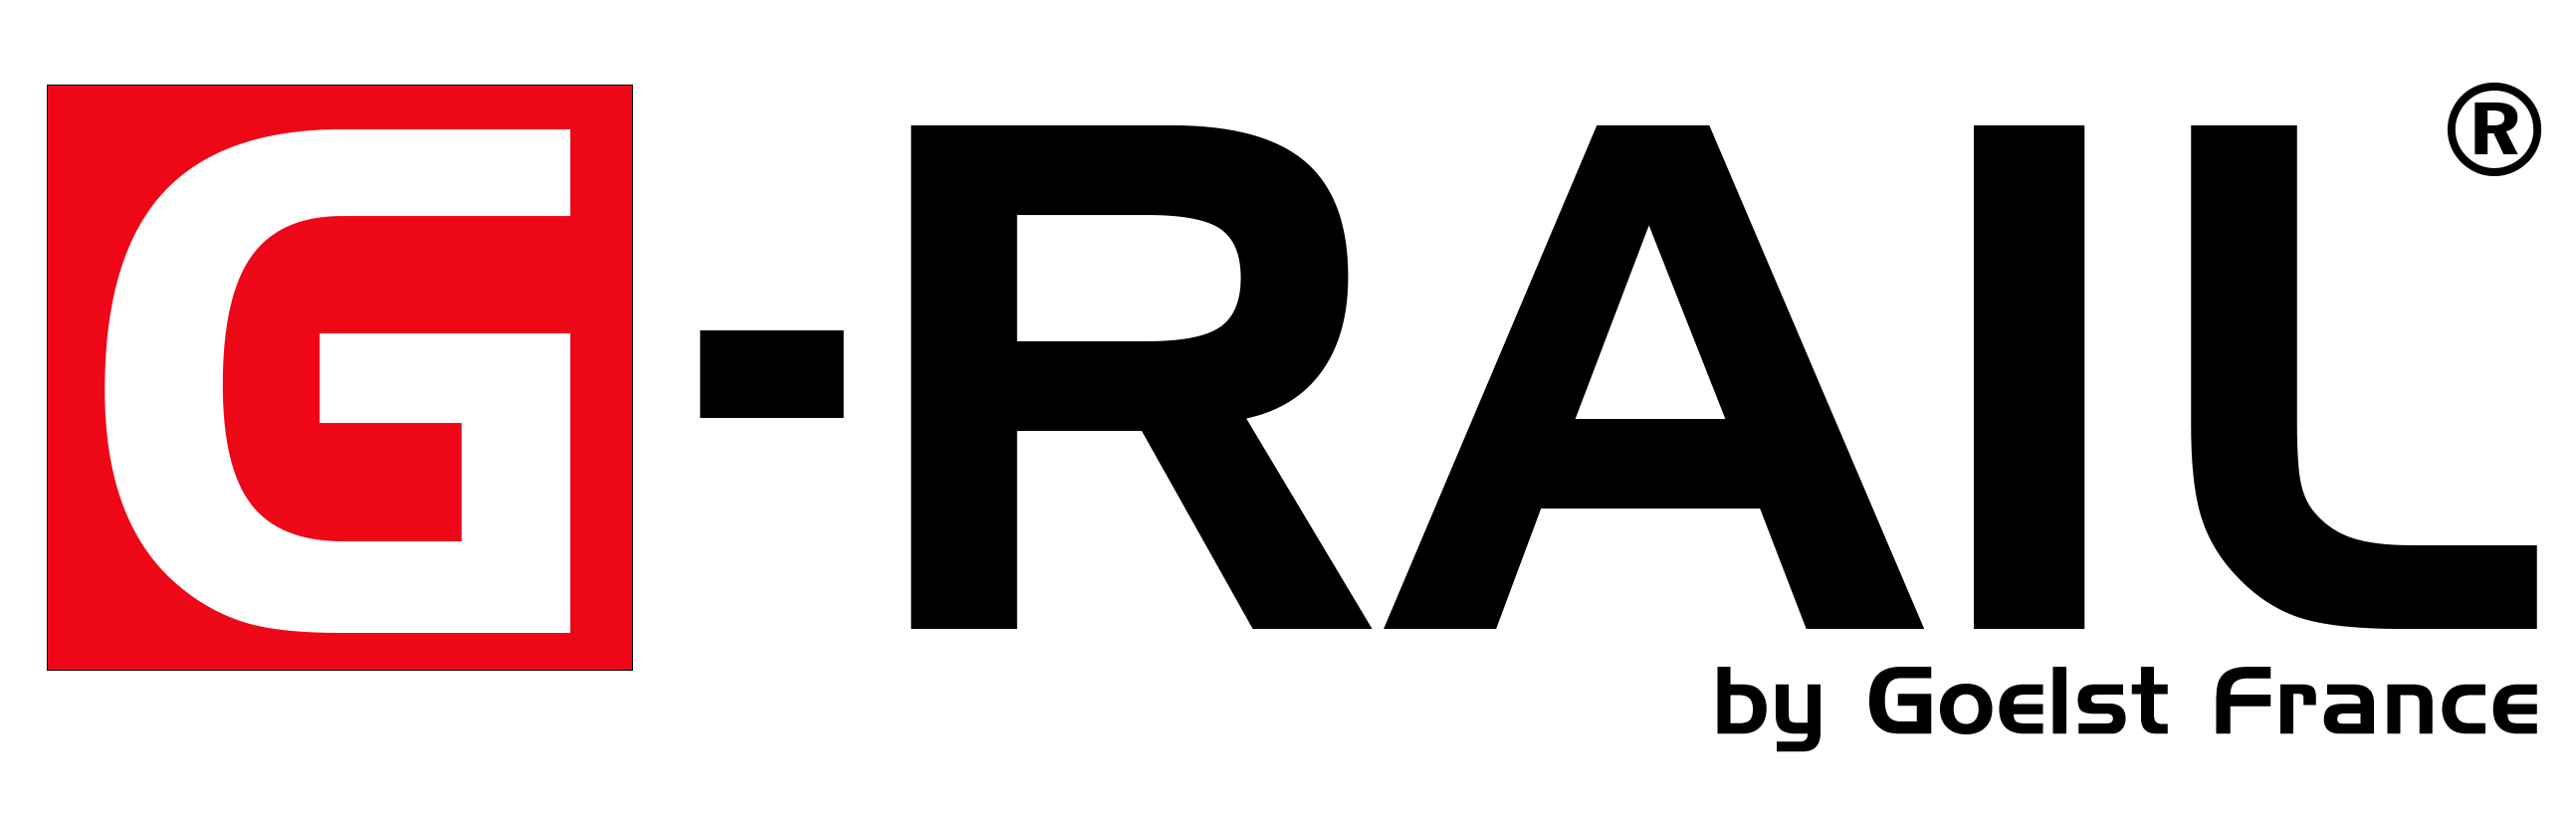 G-Rail logo